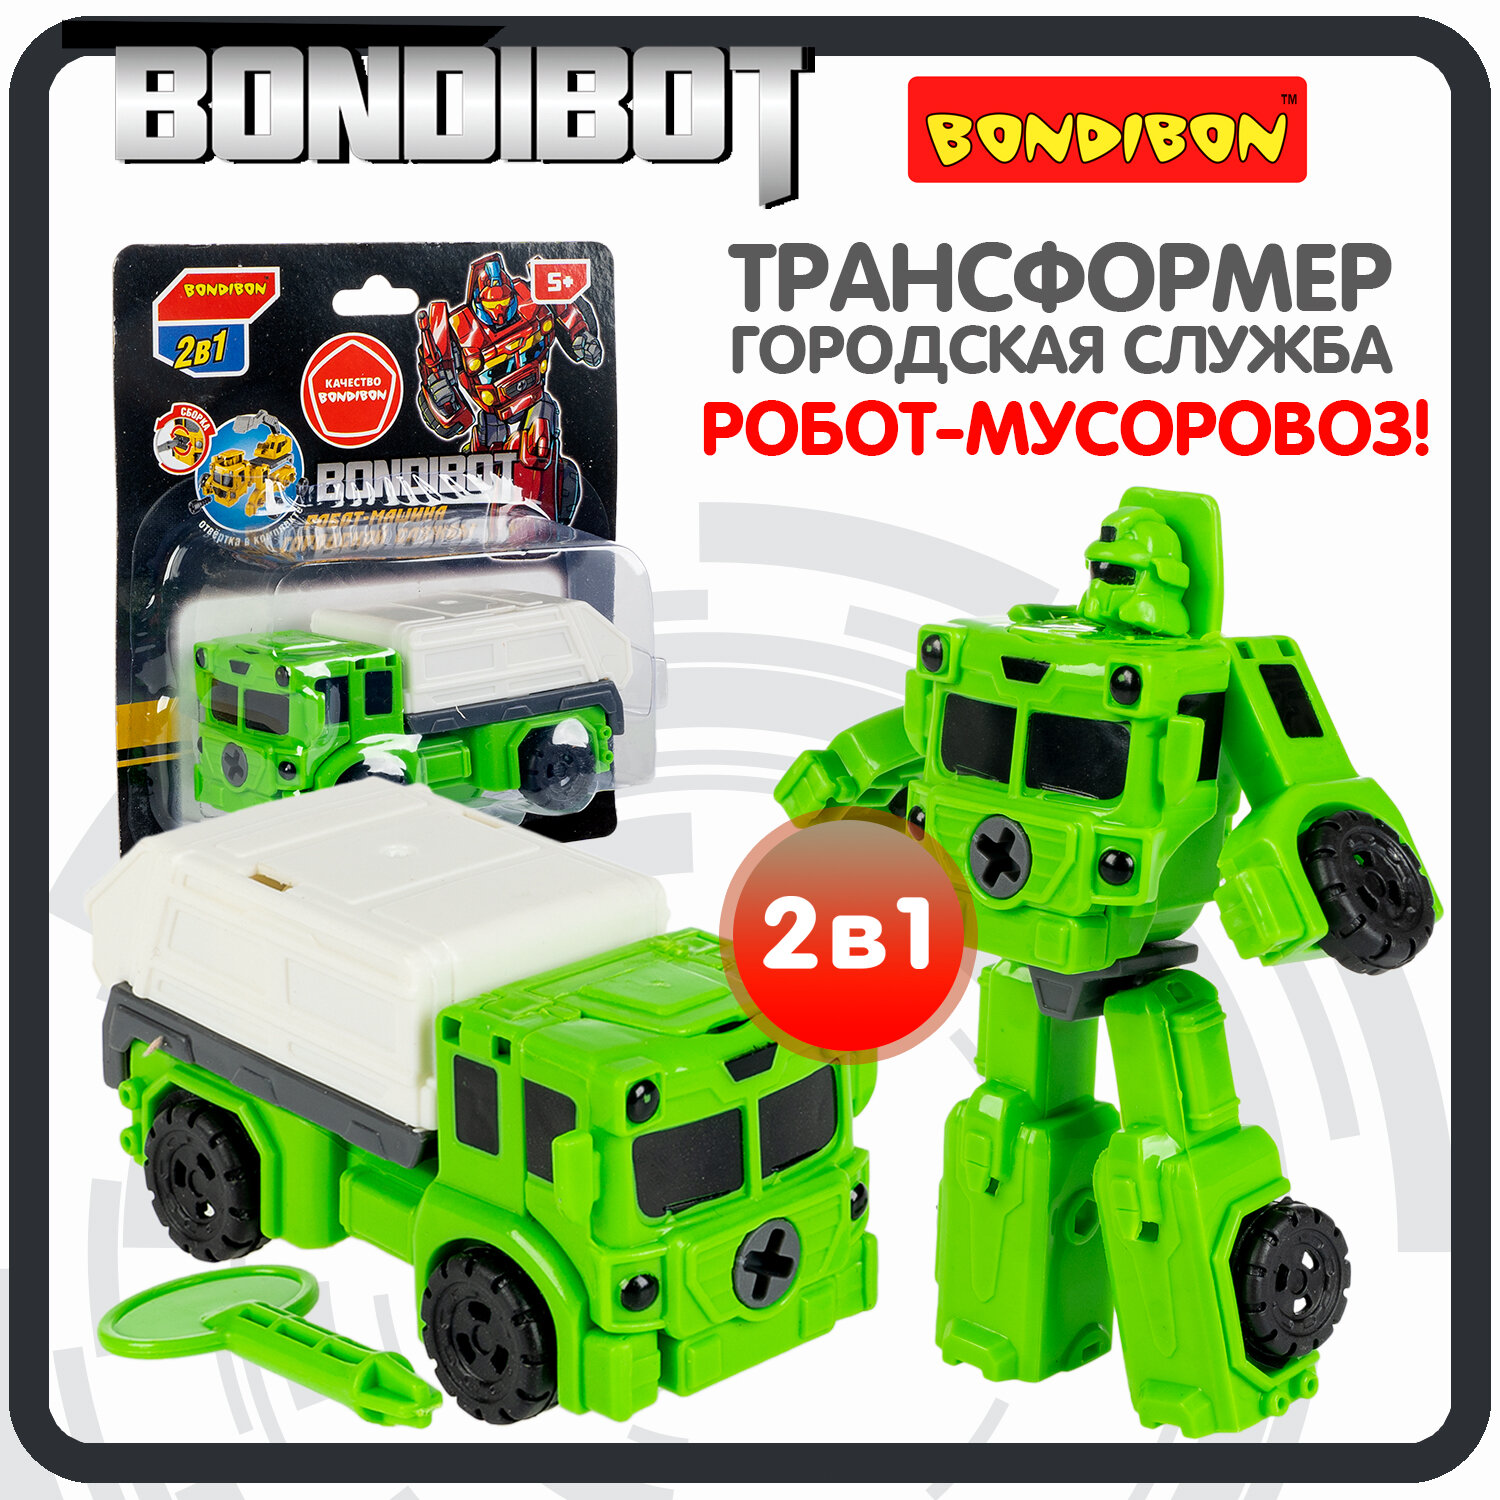 Трансформер робот-машина городской службы 2в1 BONDIBOT Bondibon мусоровоз цвет зелёный CRD135х1